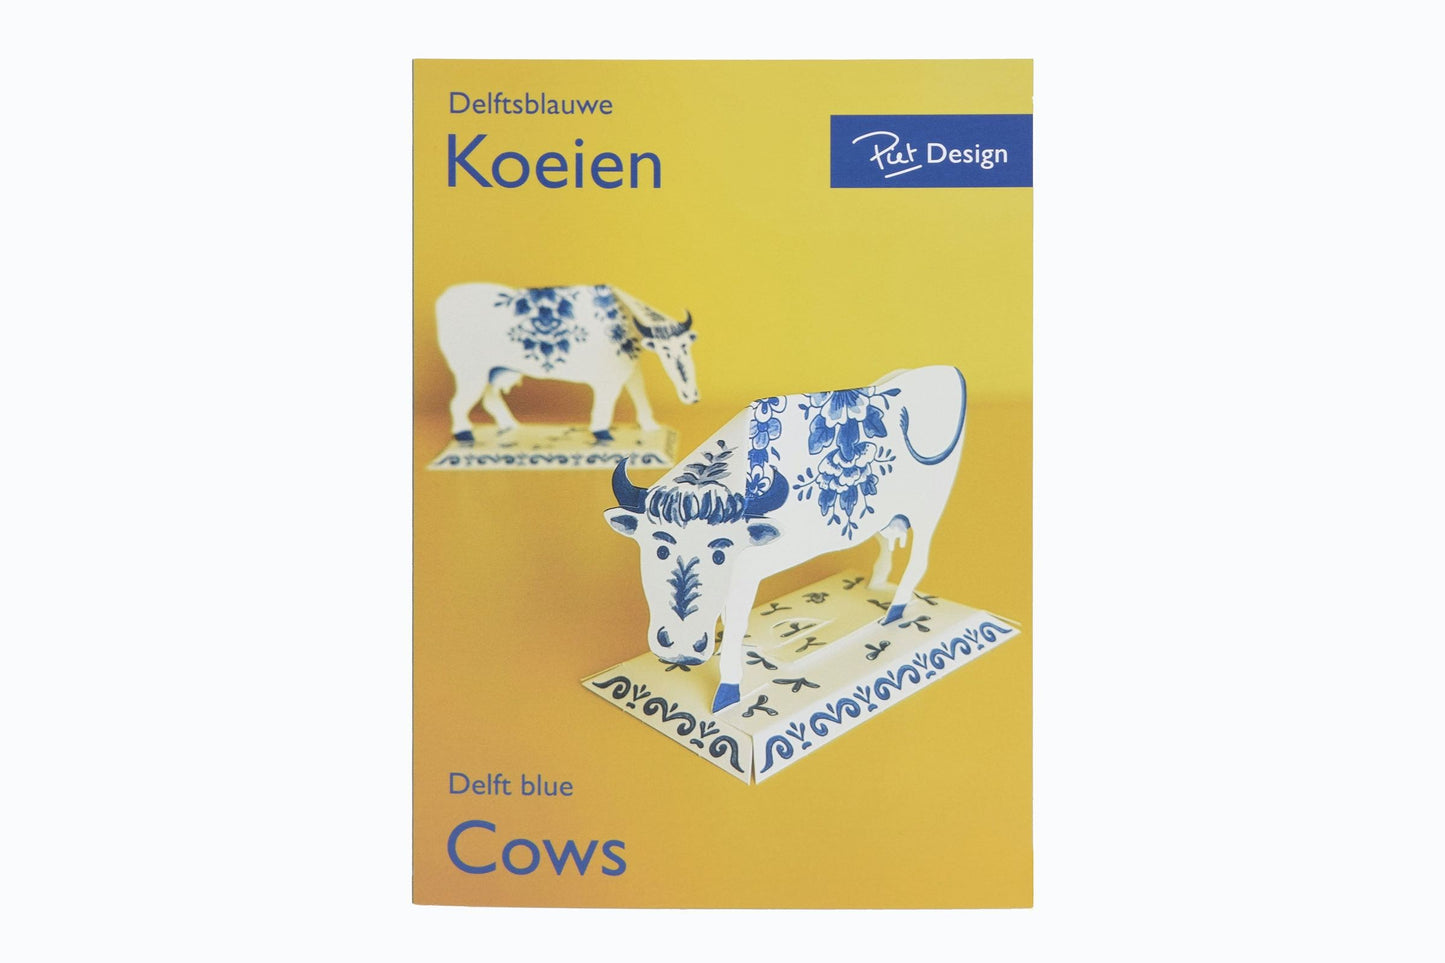 Delft blue paper cows